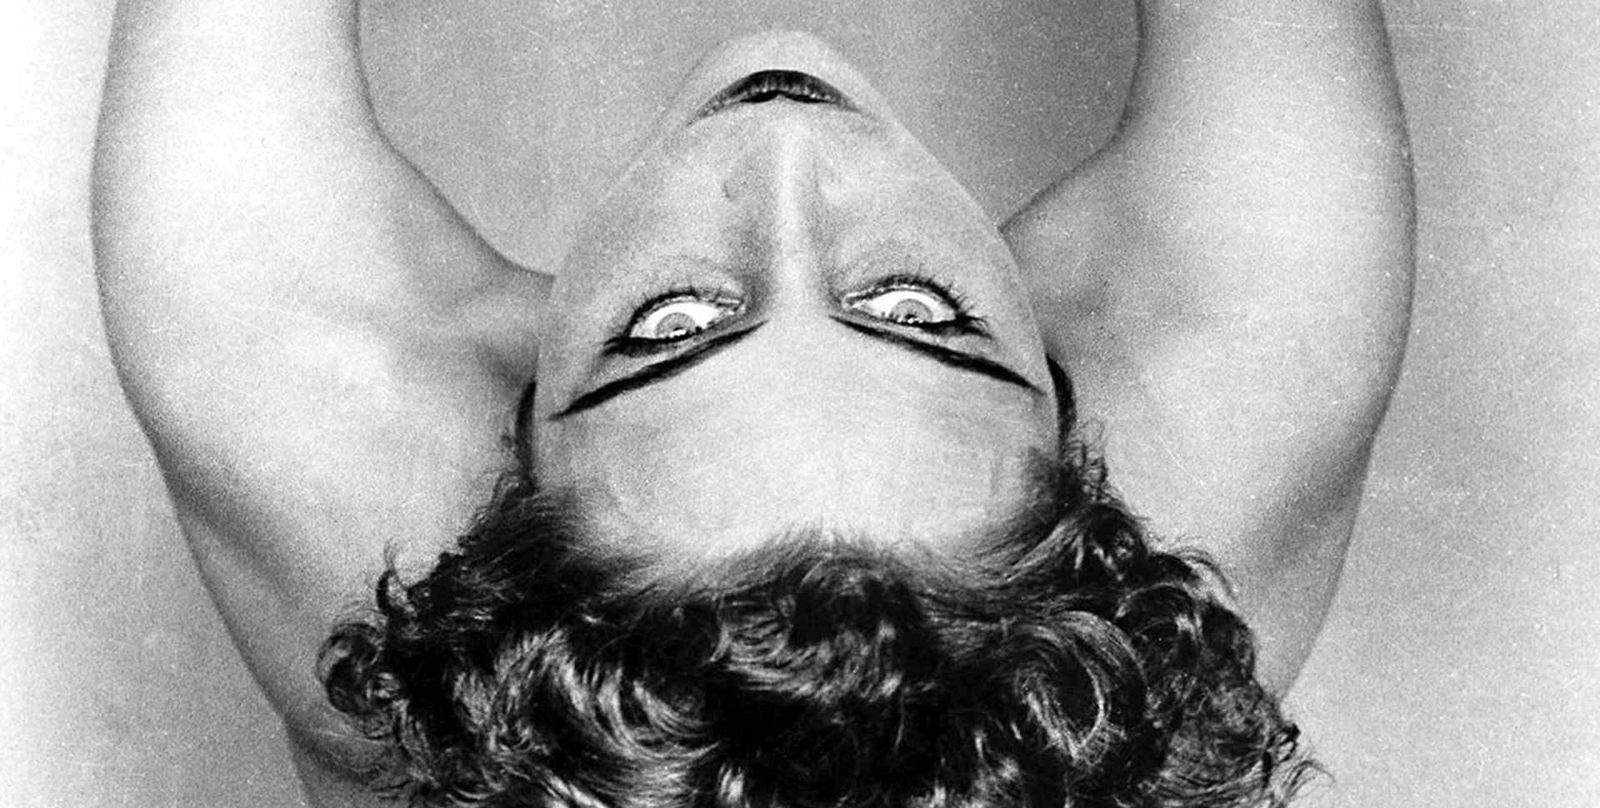 retrato de nahui ollin por Edward Weston foto